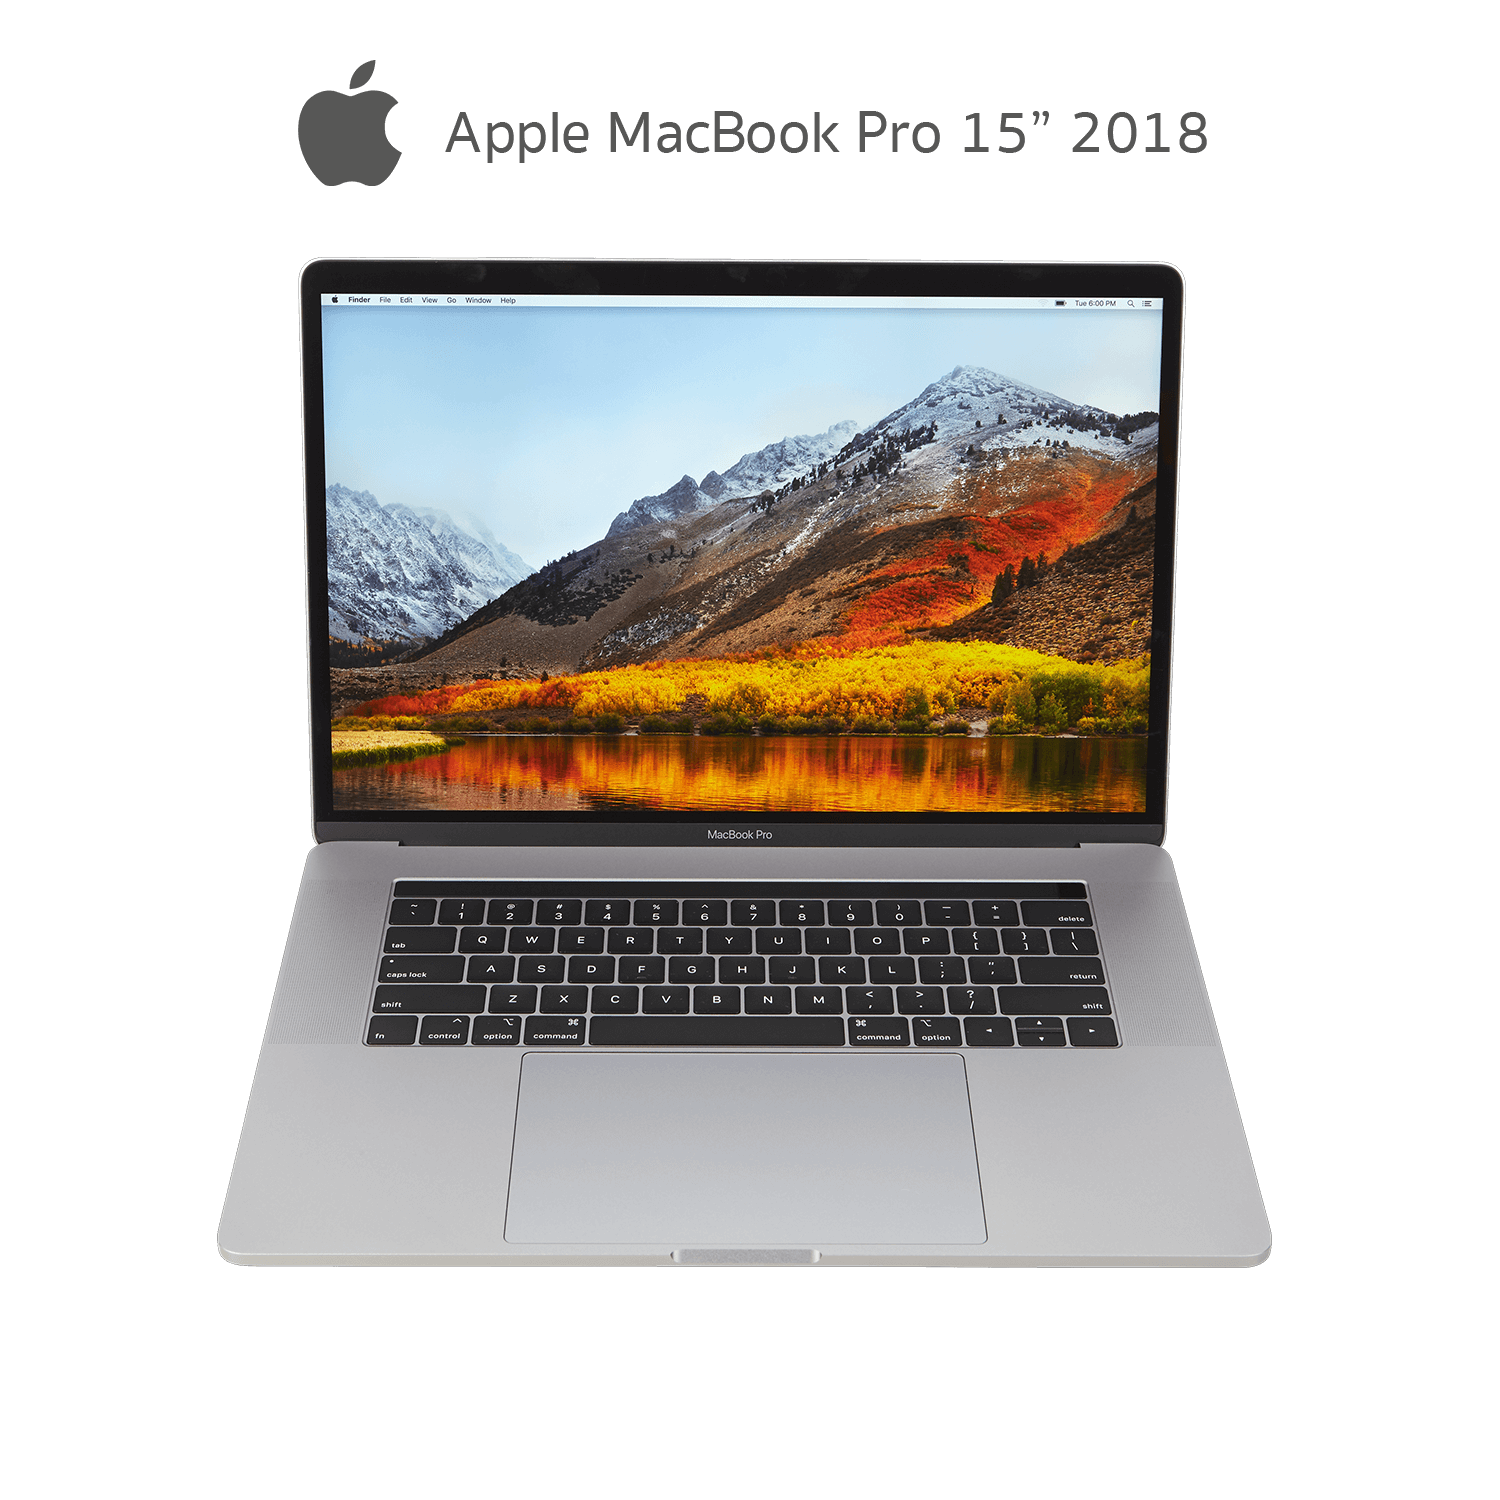 คอมมือสอง) Apple MacBook Pro 15 2018 Core i7 Ram 16GB SSD 1TB Radeon Pro  560x Display 15.4 inch IPS | NextStep Reborn คอมประกอบ ของใหม่ คอมแบรนด์  มือสอง คุณภาพดี ราคาถูก มีรับประกัน